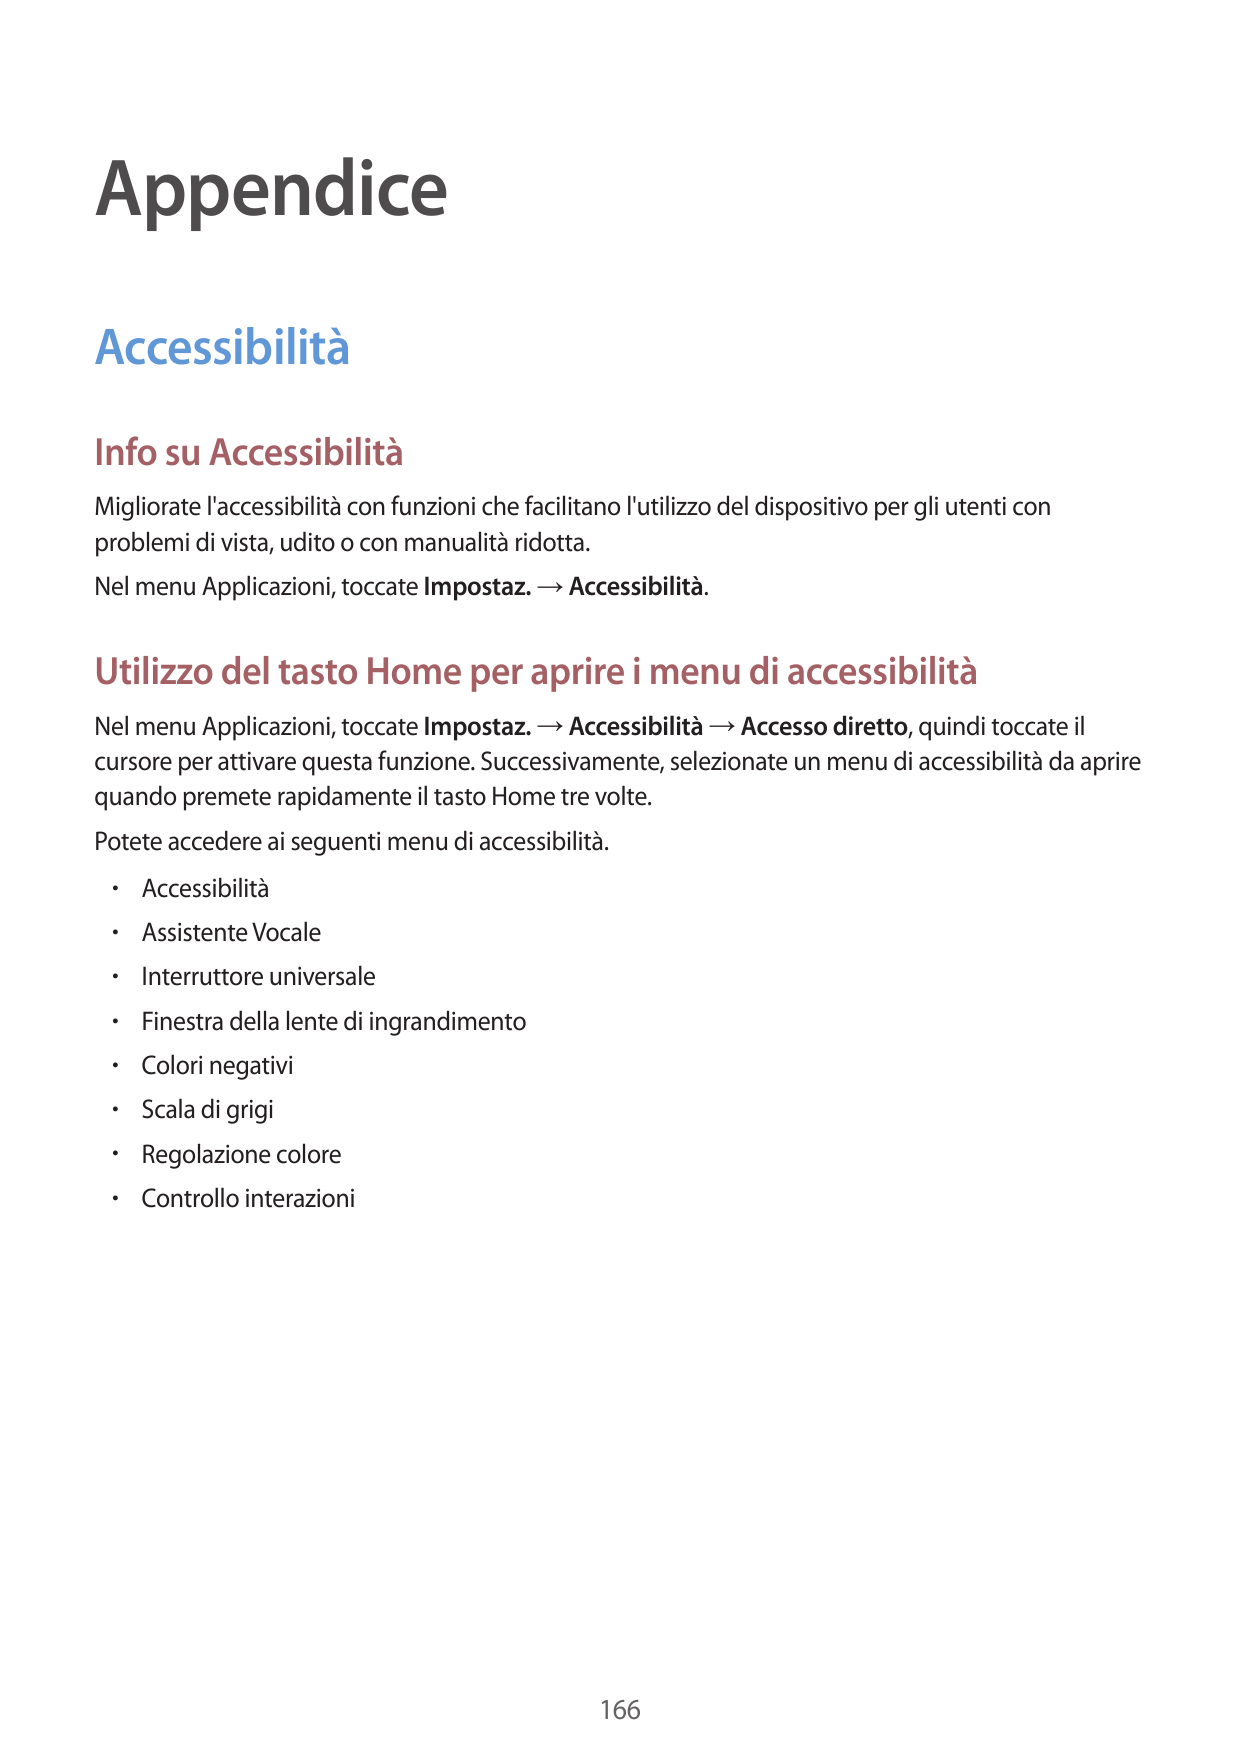 AppendiceAccessibilitàInfo su AccessibilitàMigliorate l'accessibilità con funzioni che facilitano l'utilizzo del dispositivo per